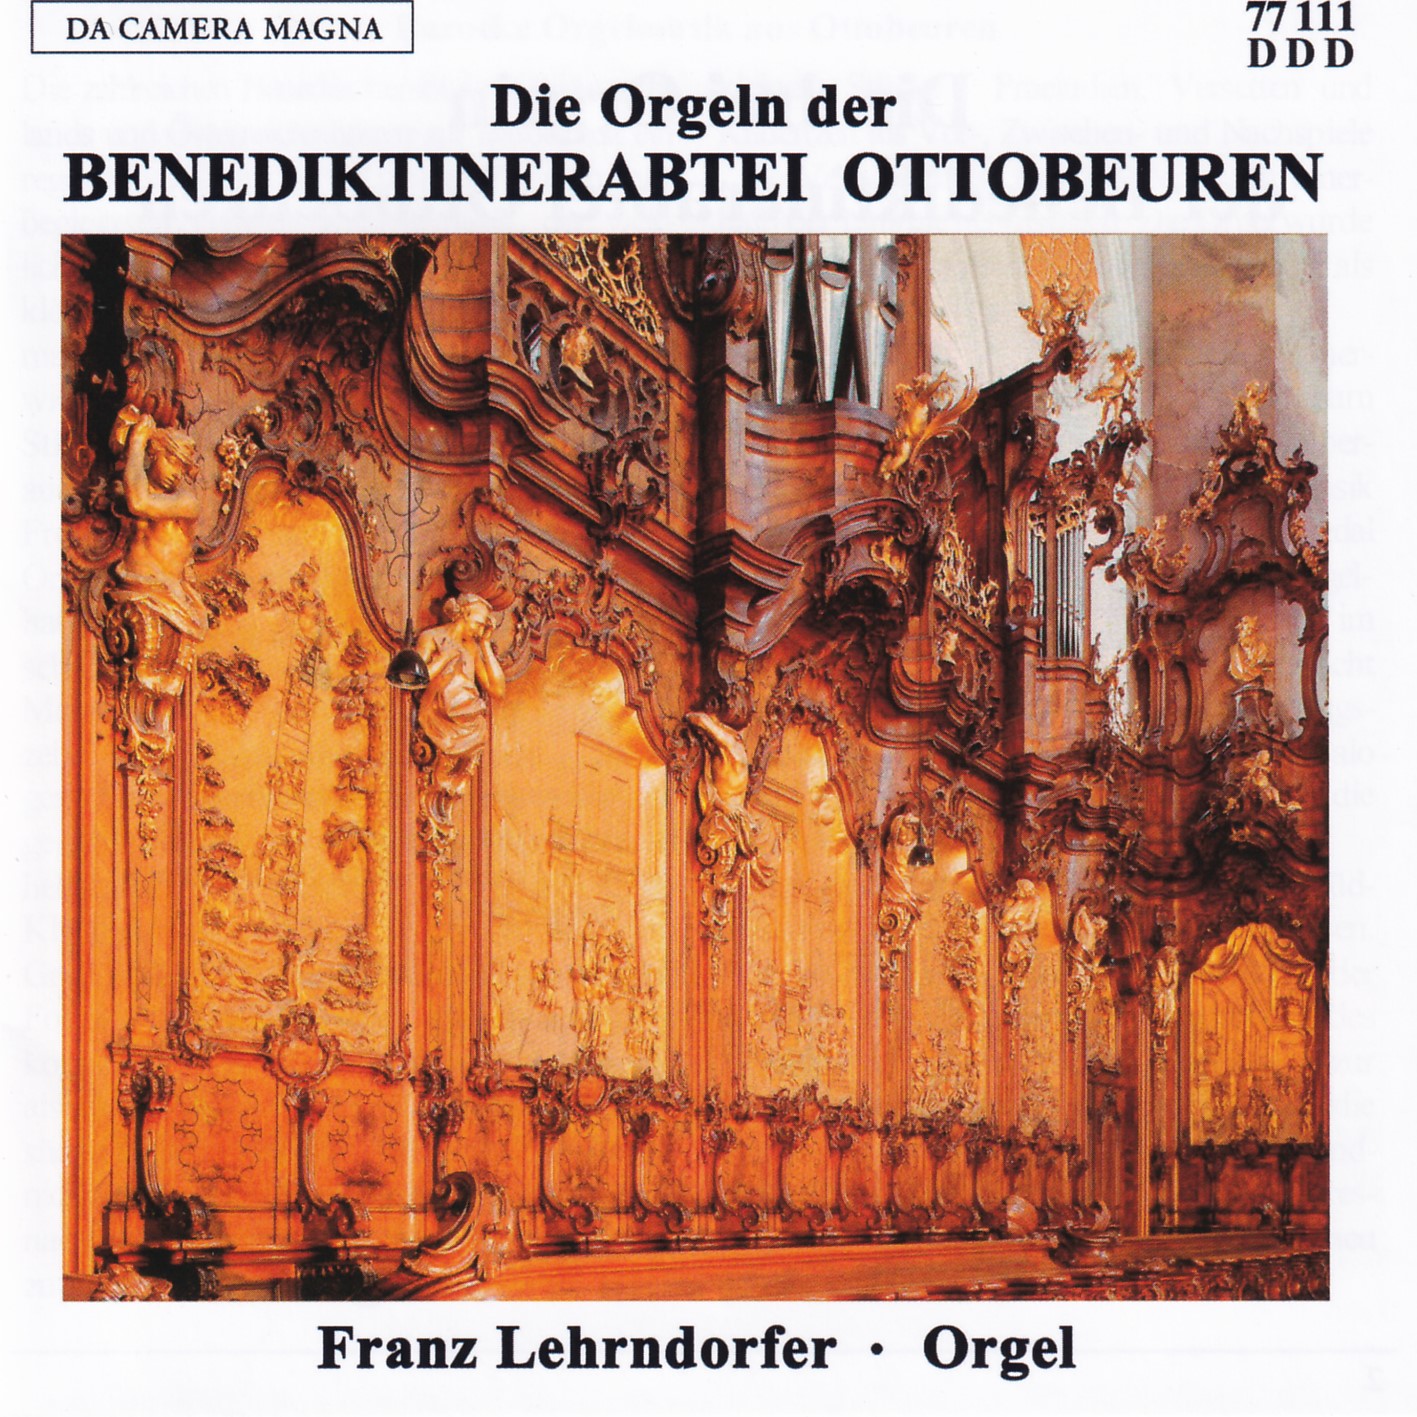 Die drei Orgeln der Abtei Ottobeuren